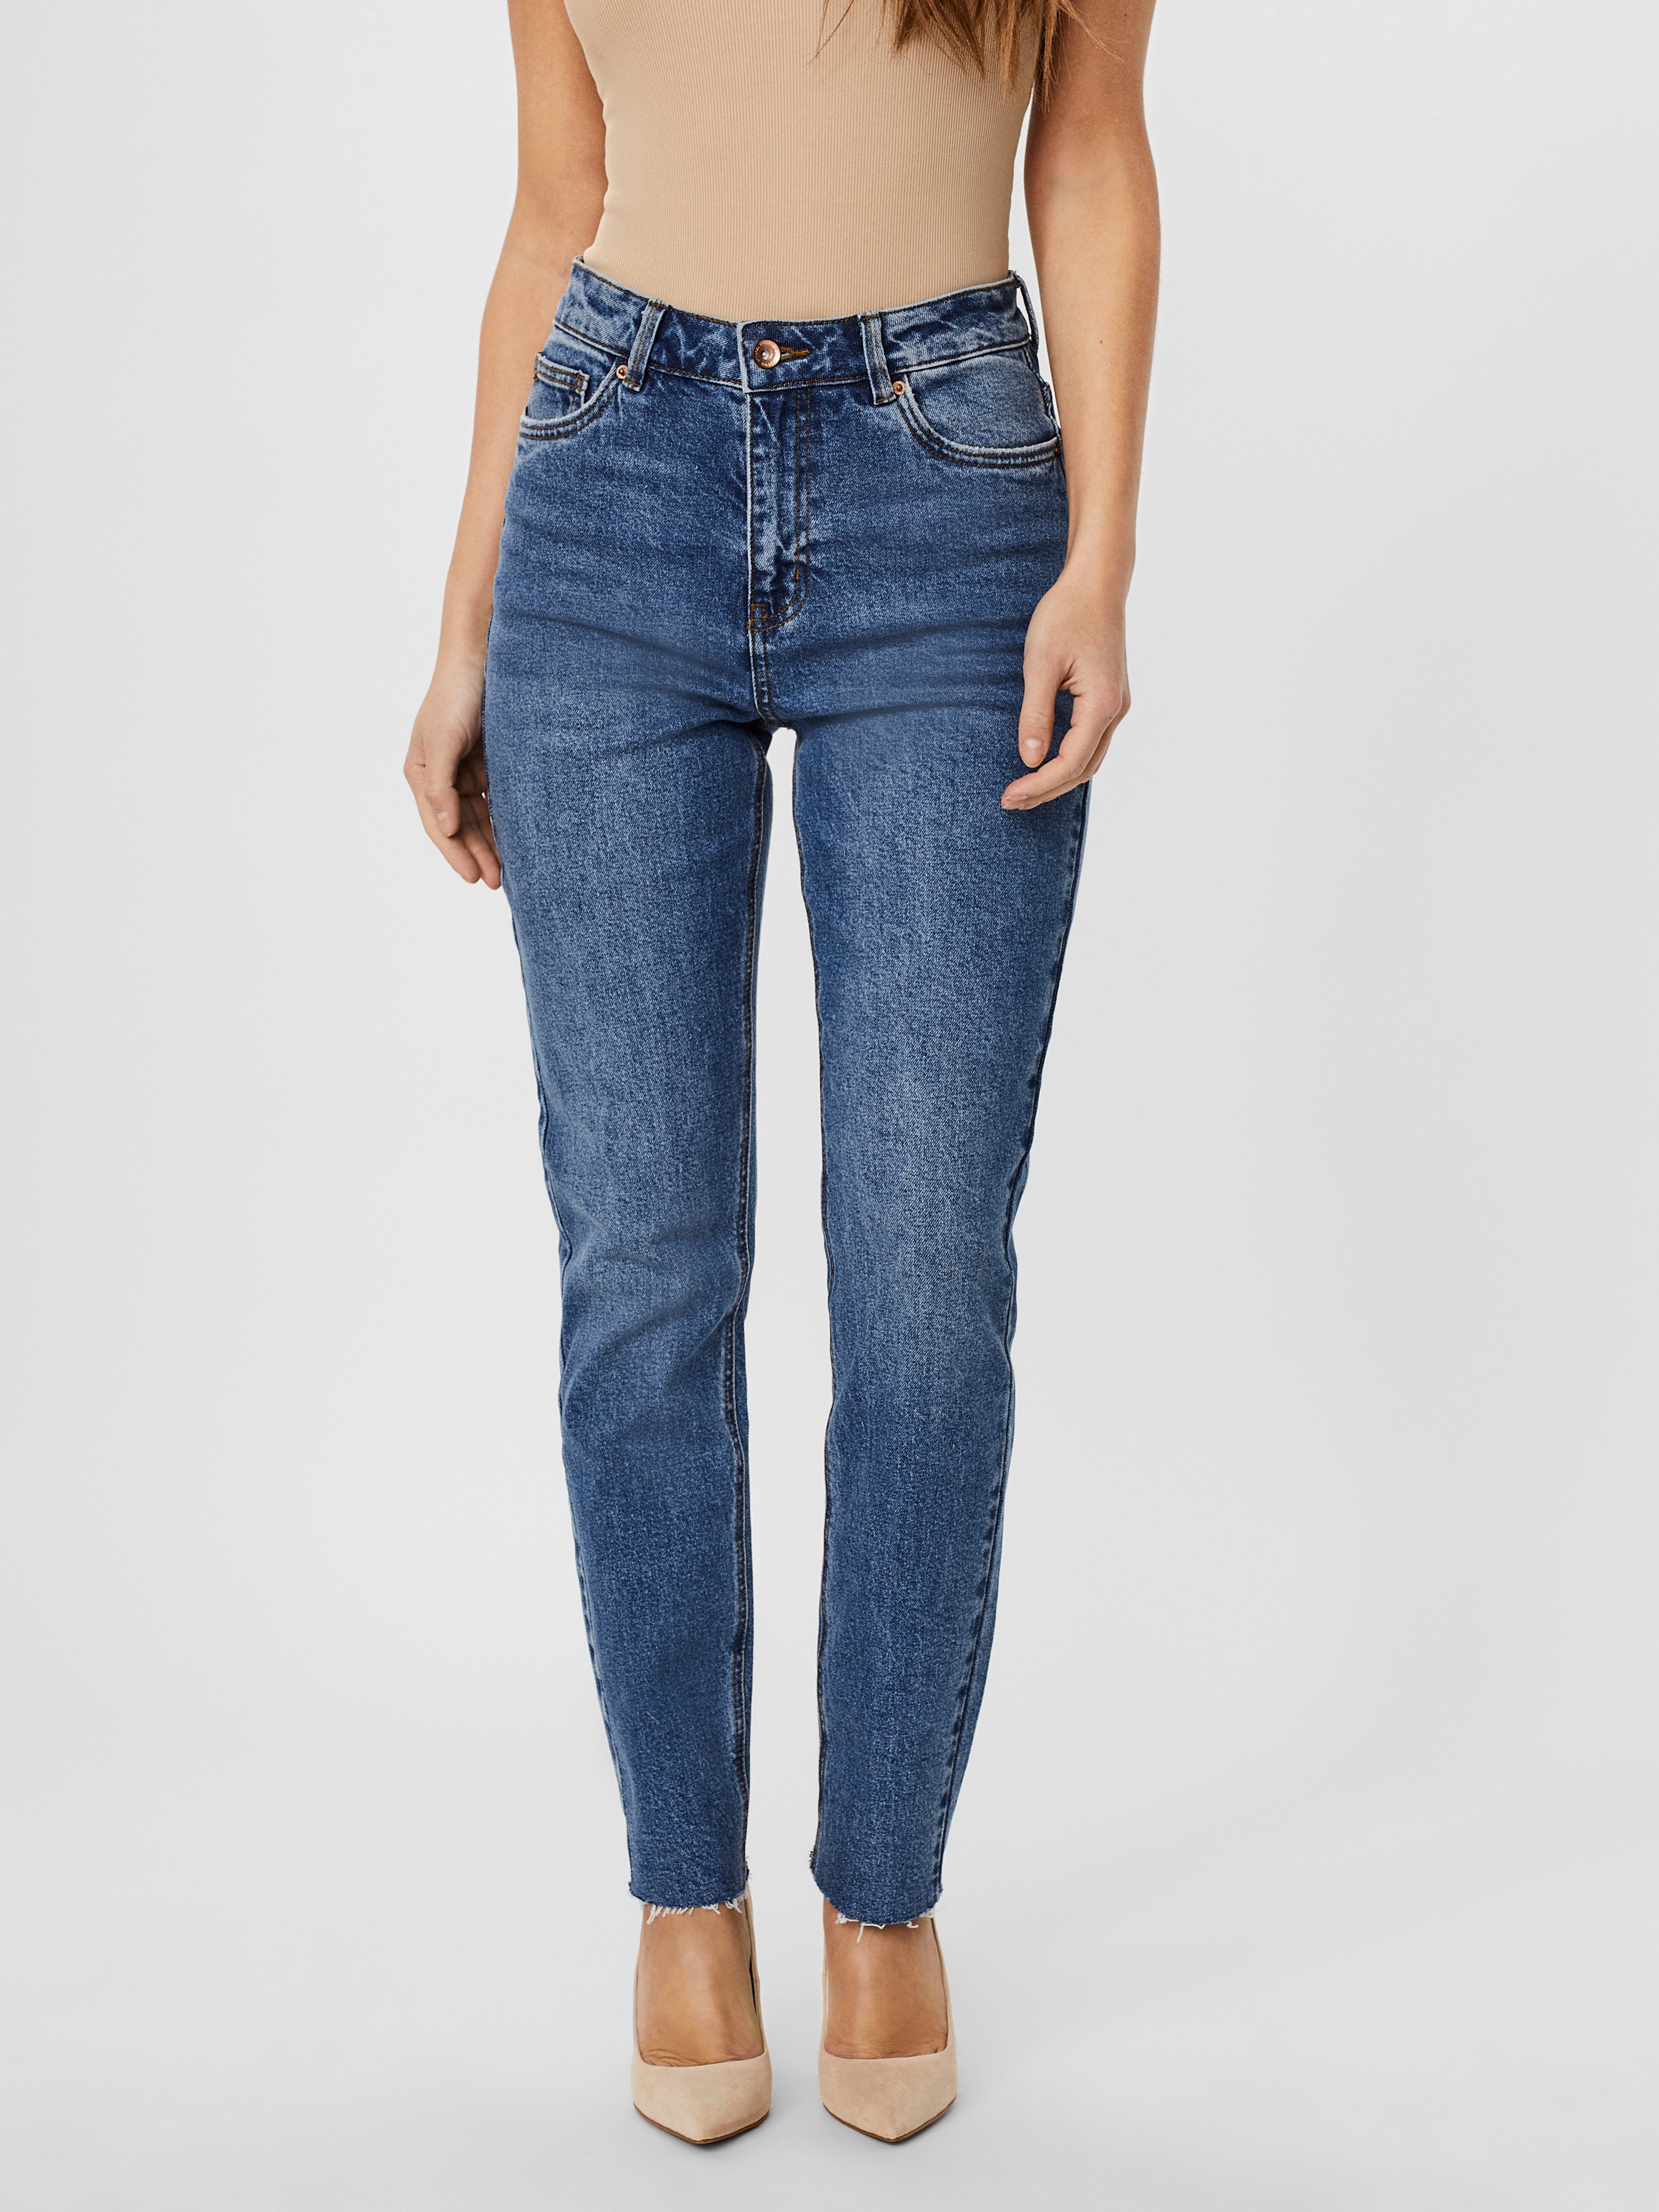 Vero Moda Denim Jeanshose in Blau Damen Bekleidung Jeans Jeans mit gerader Passform 